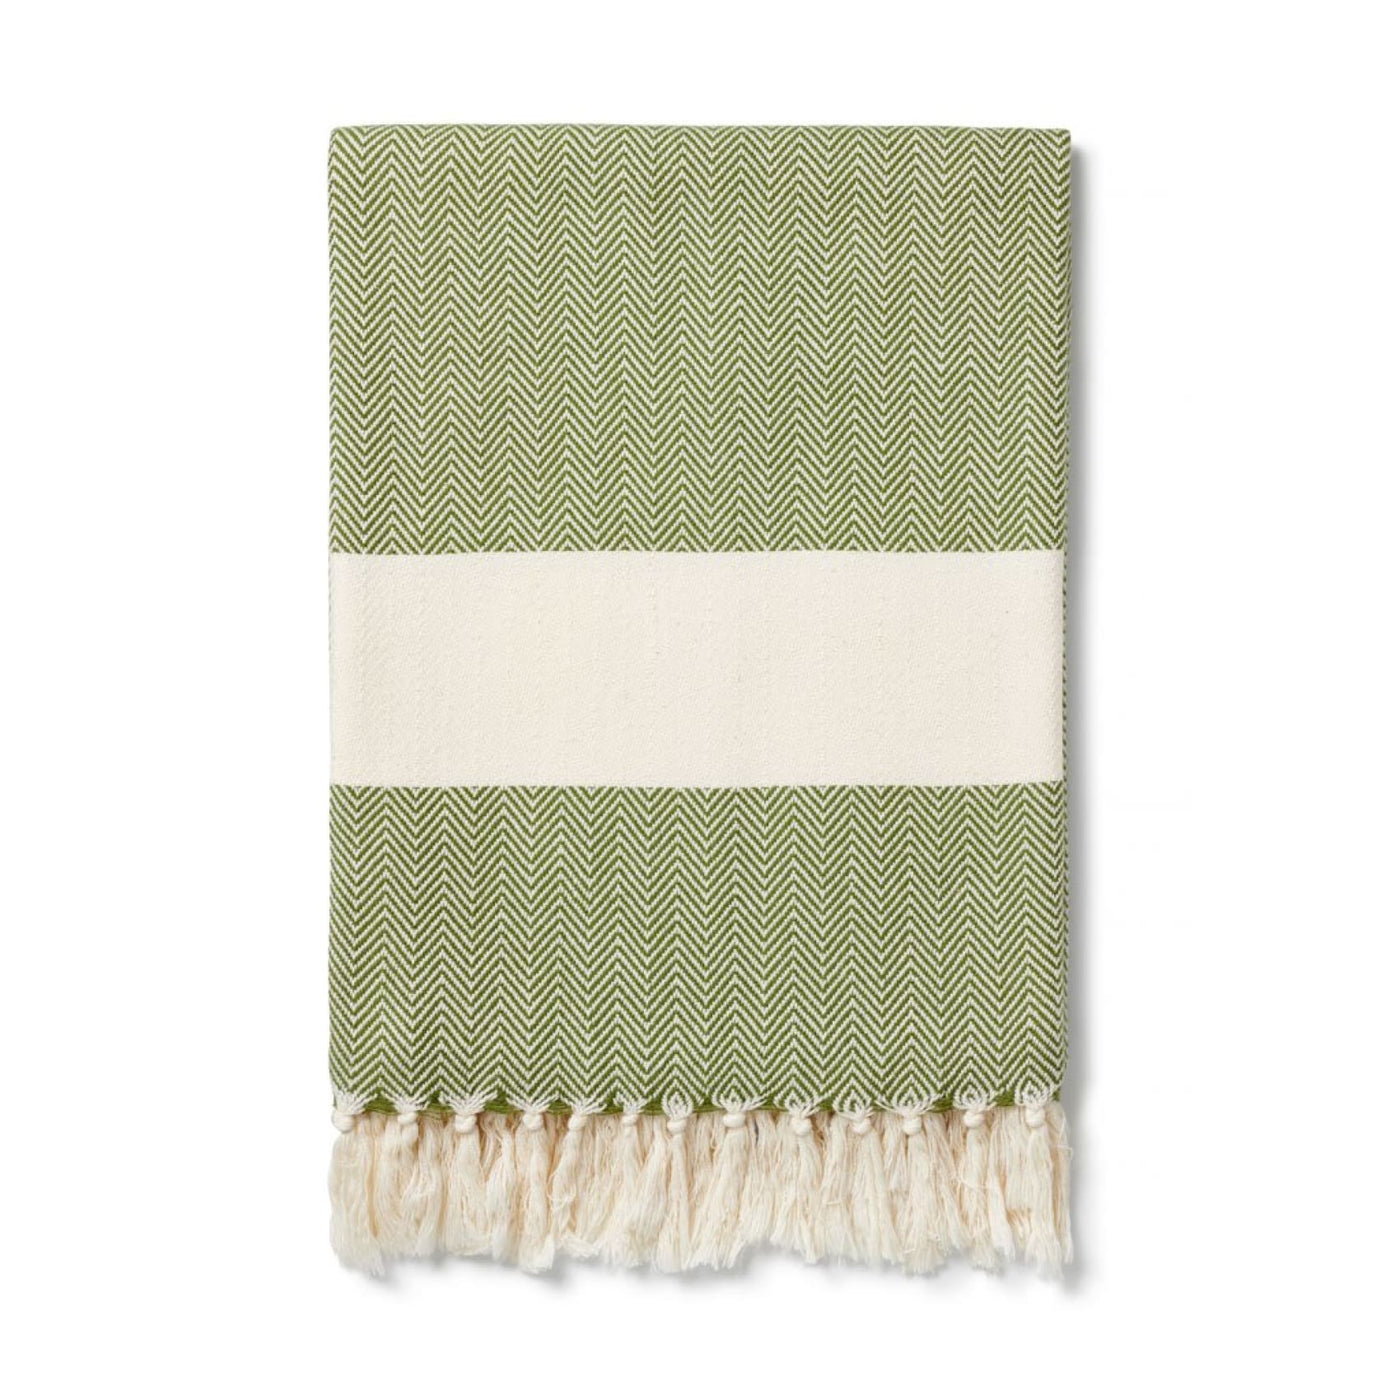 Ferah Cotton Peshtemal Towel 